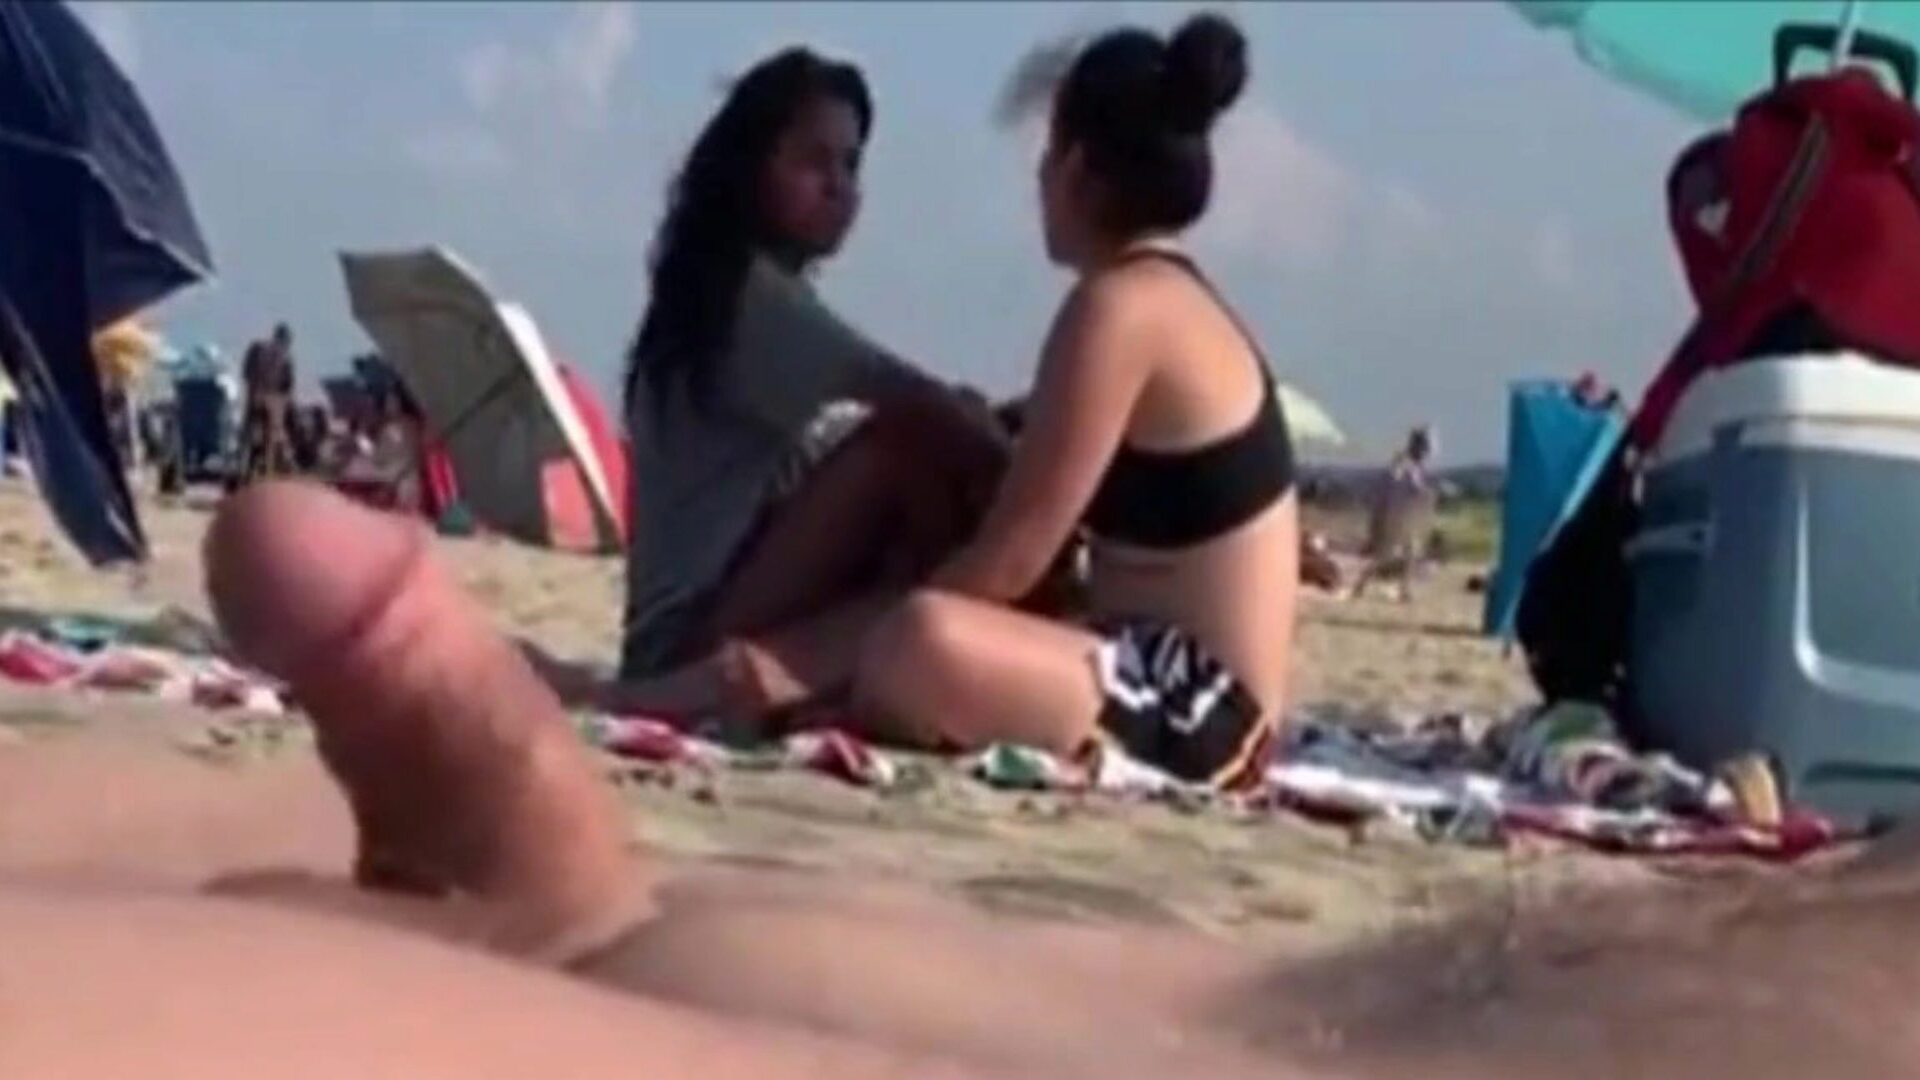 dvije djevojke promatraju moj hard-on na javnoj plaži dvije ljepotice koje me prate mog wanga su pustile ..